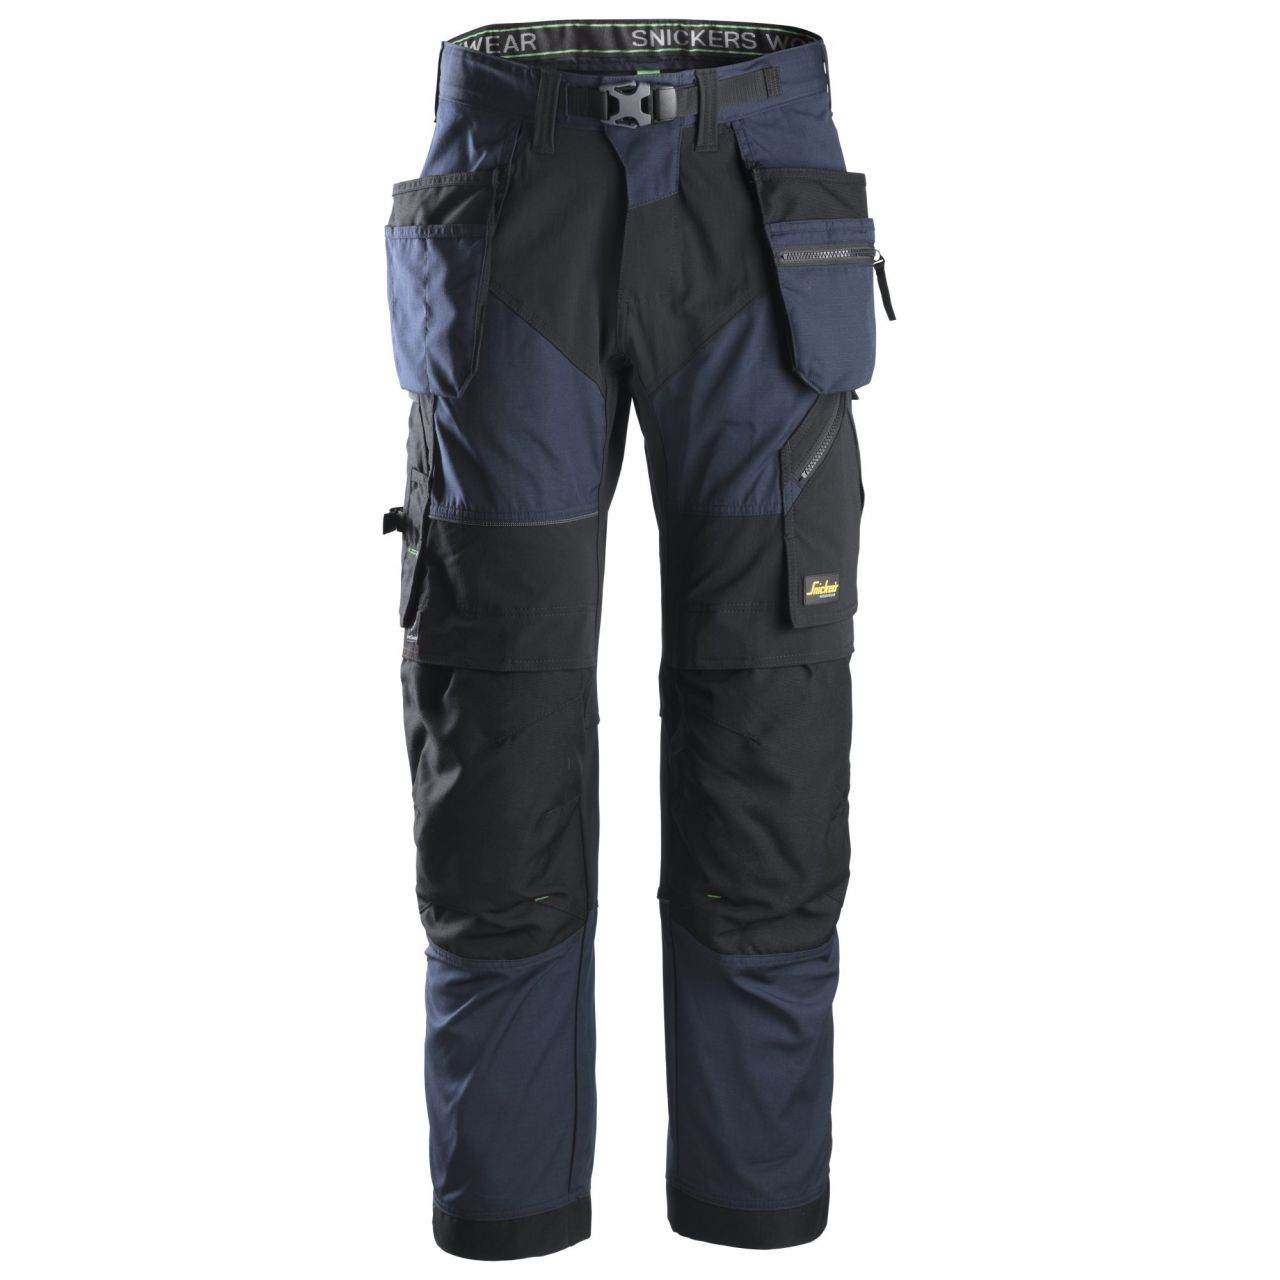 6902 Pantalón largo FlexiWork+ con bolsillos flotantes azul marino-negro talla 52